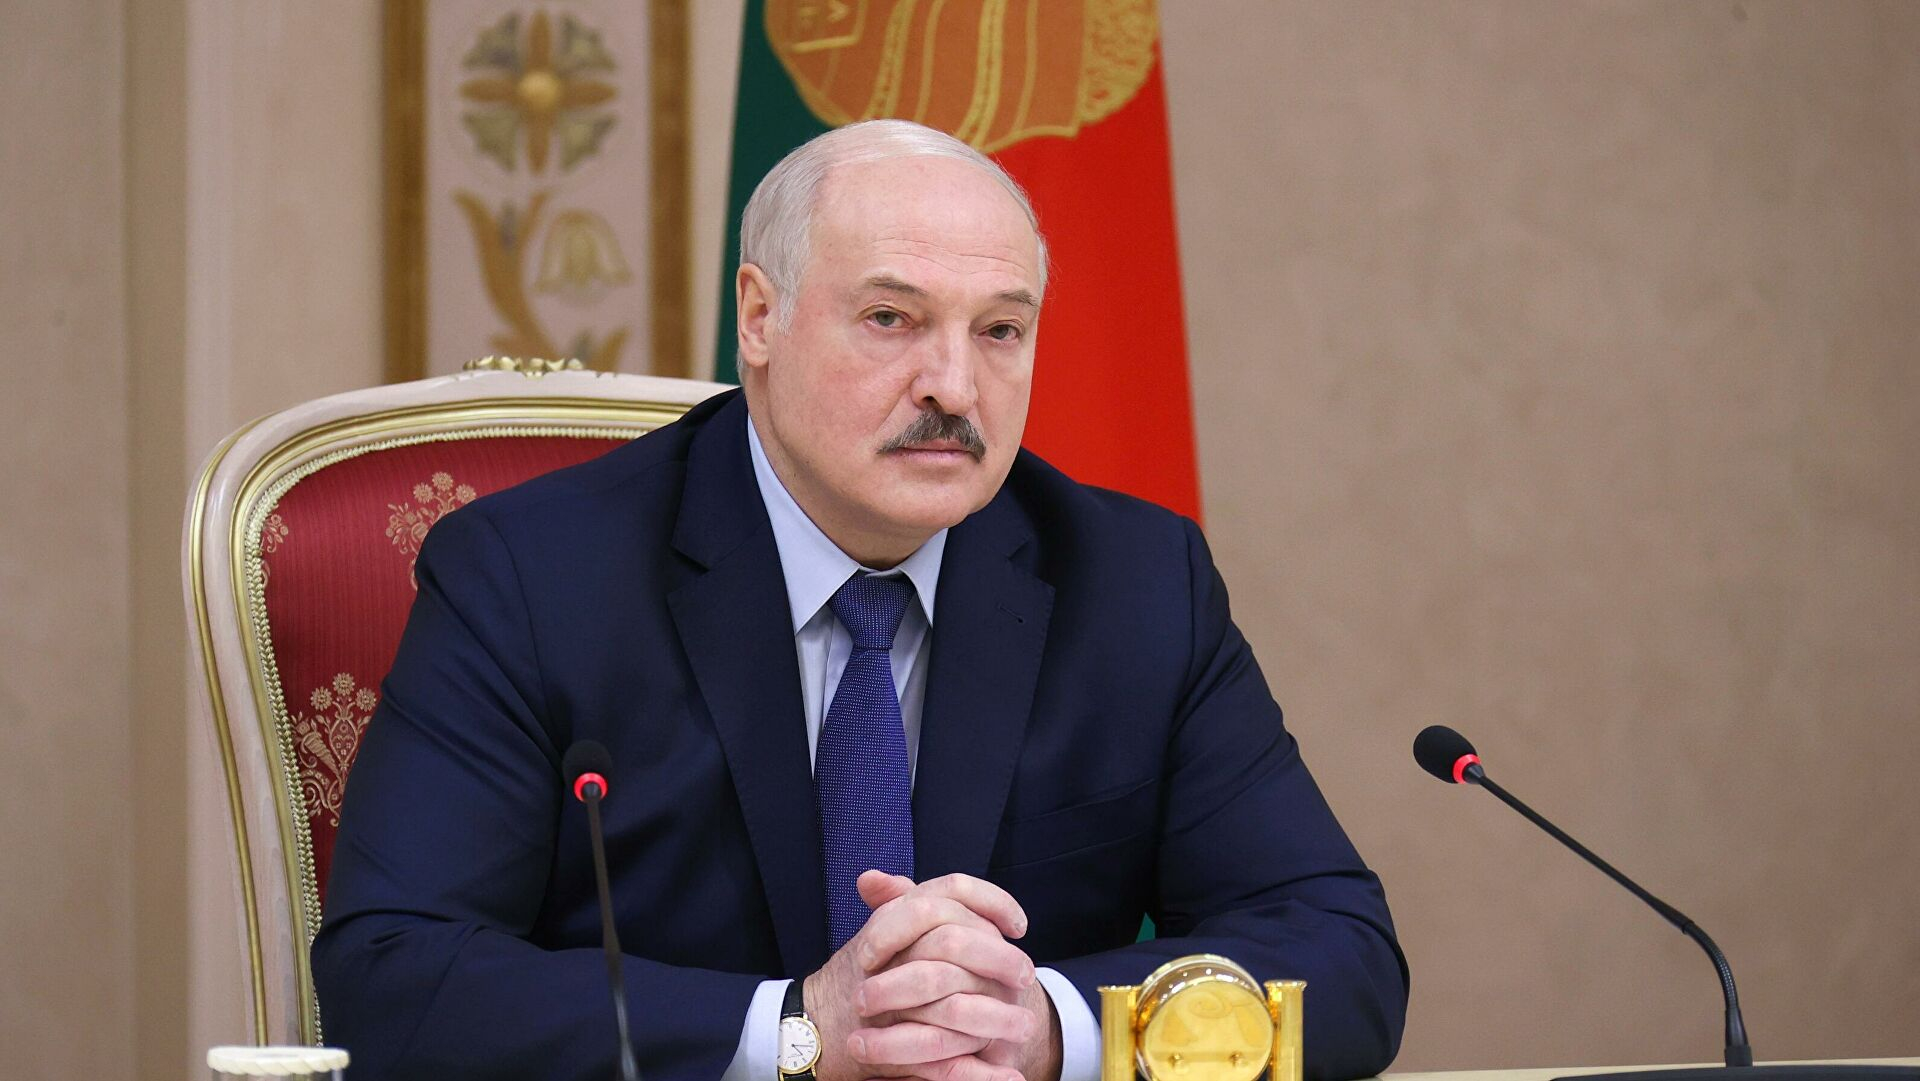 Qərb Belarusu işğala hazırlaşır - Lukaşenkodan ittiham